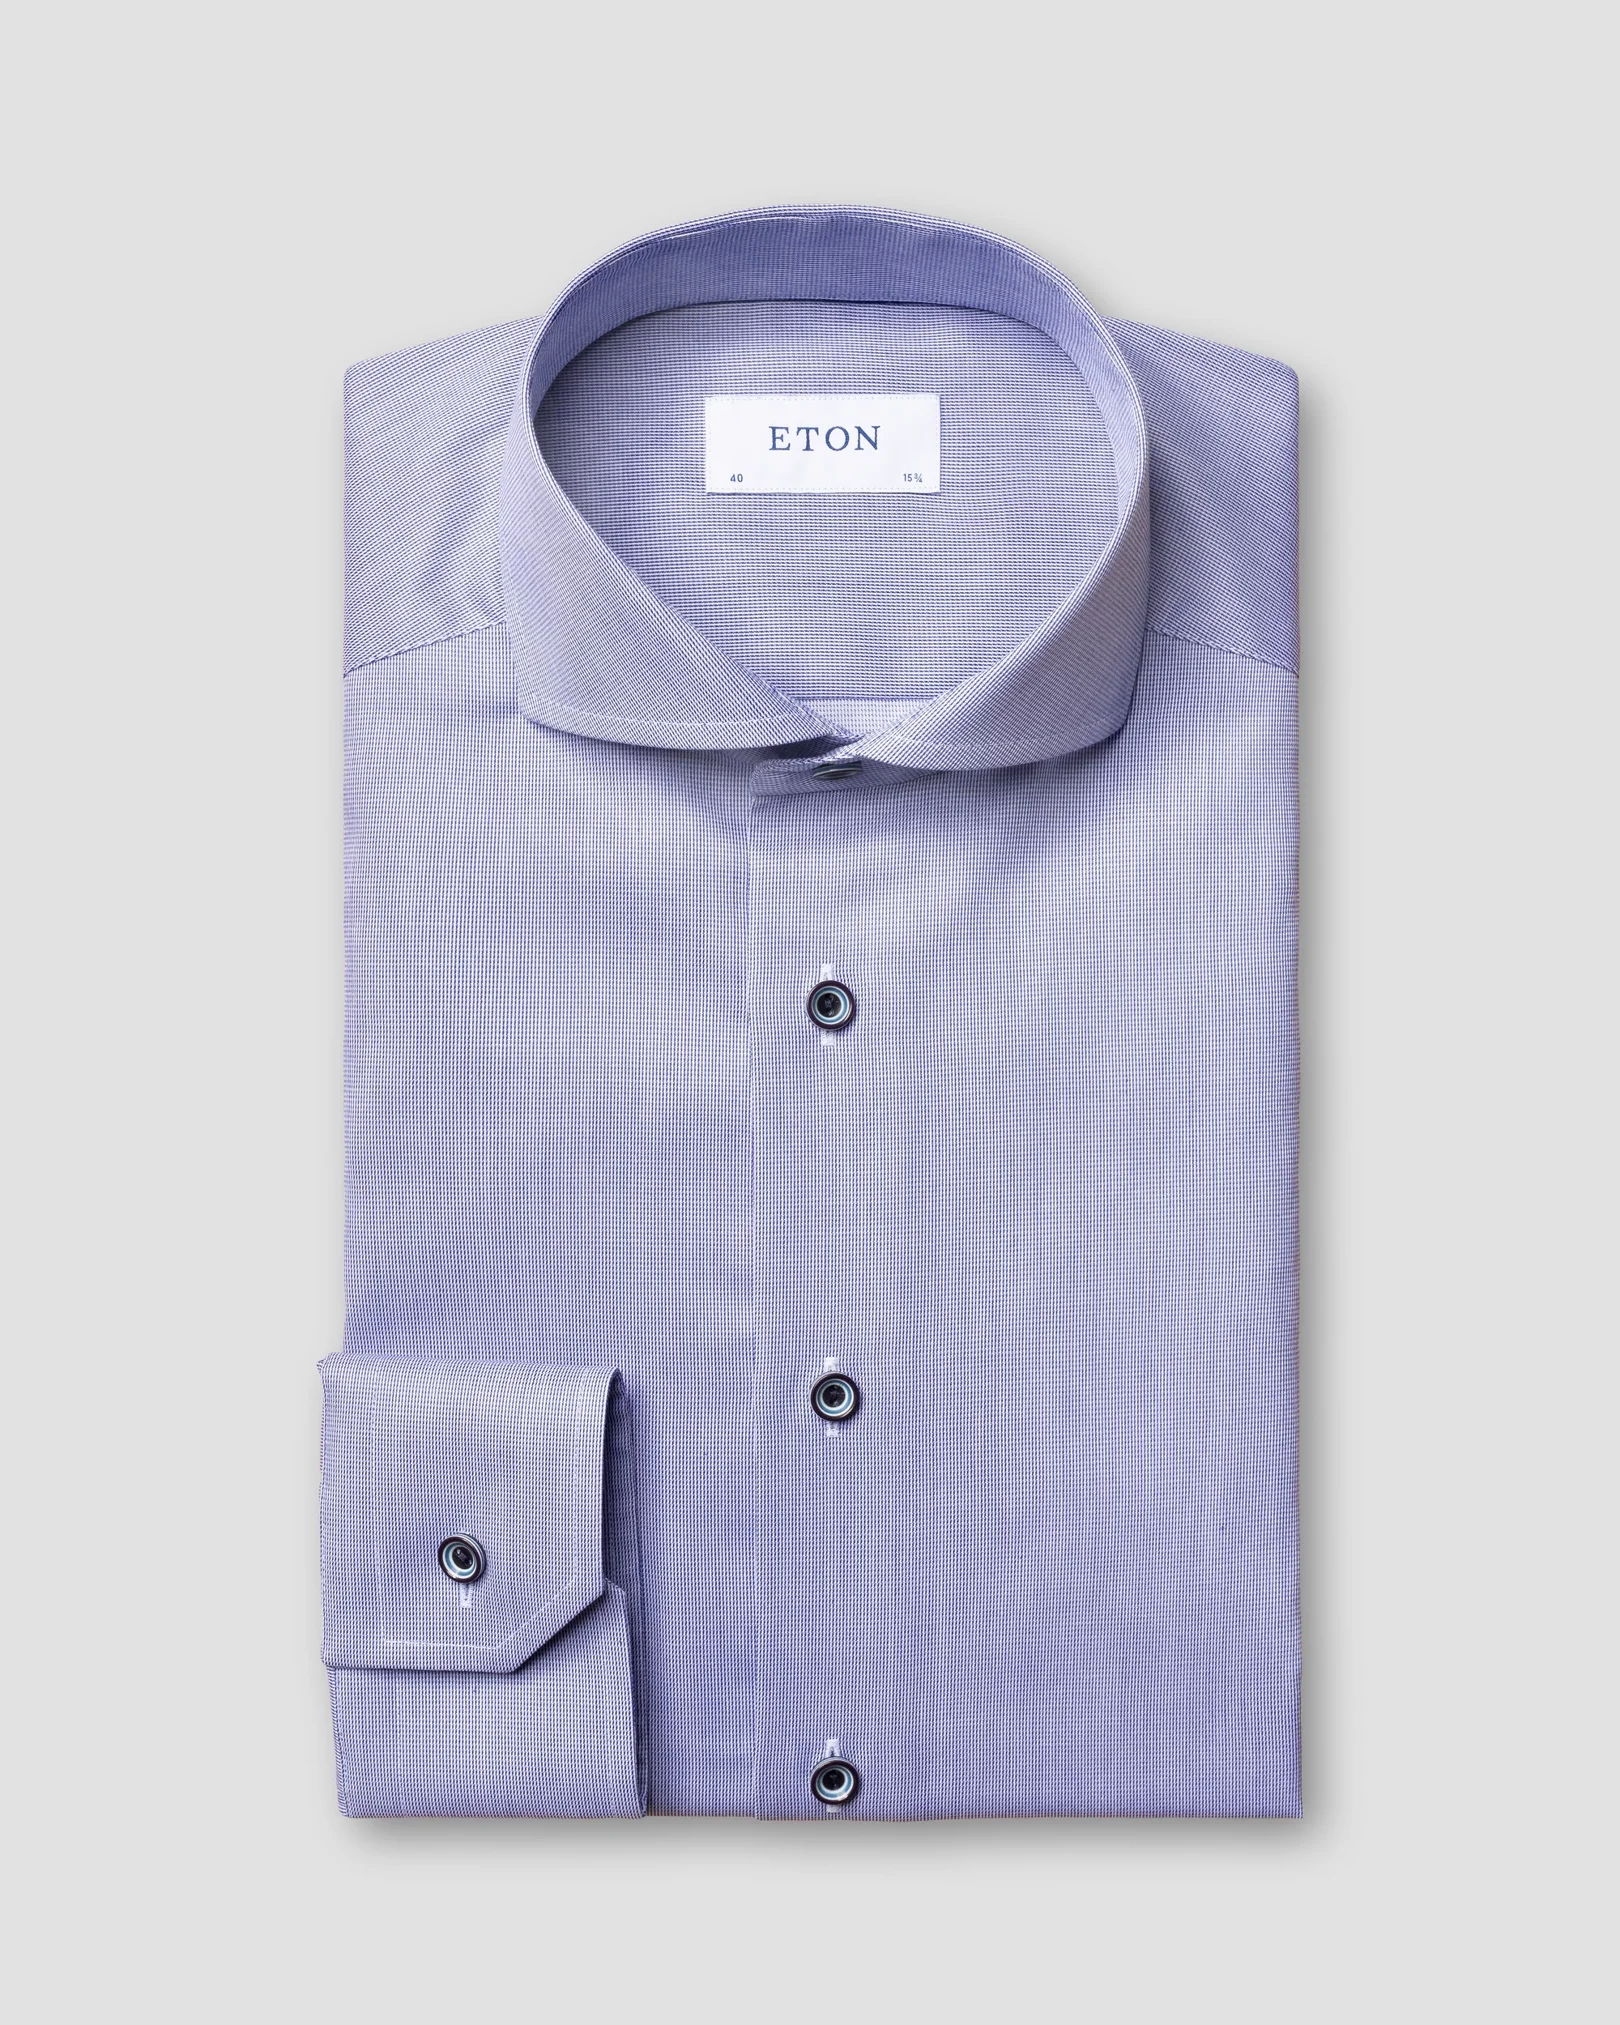 Eton - pastel navy shirt extreme cut away